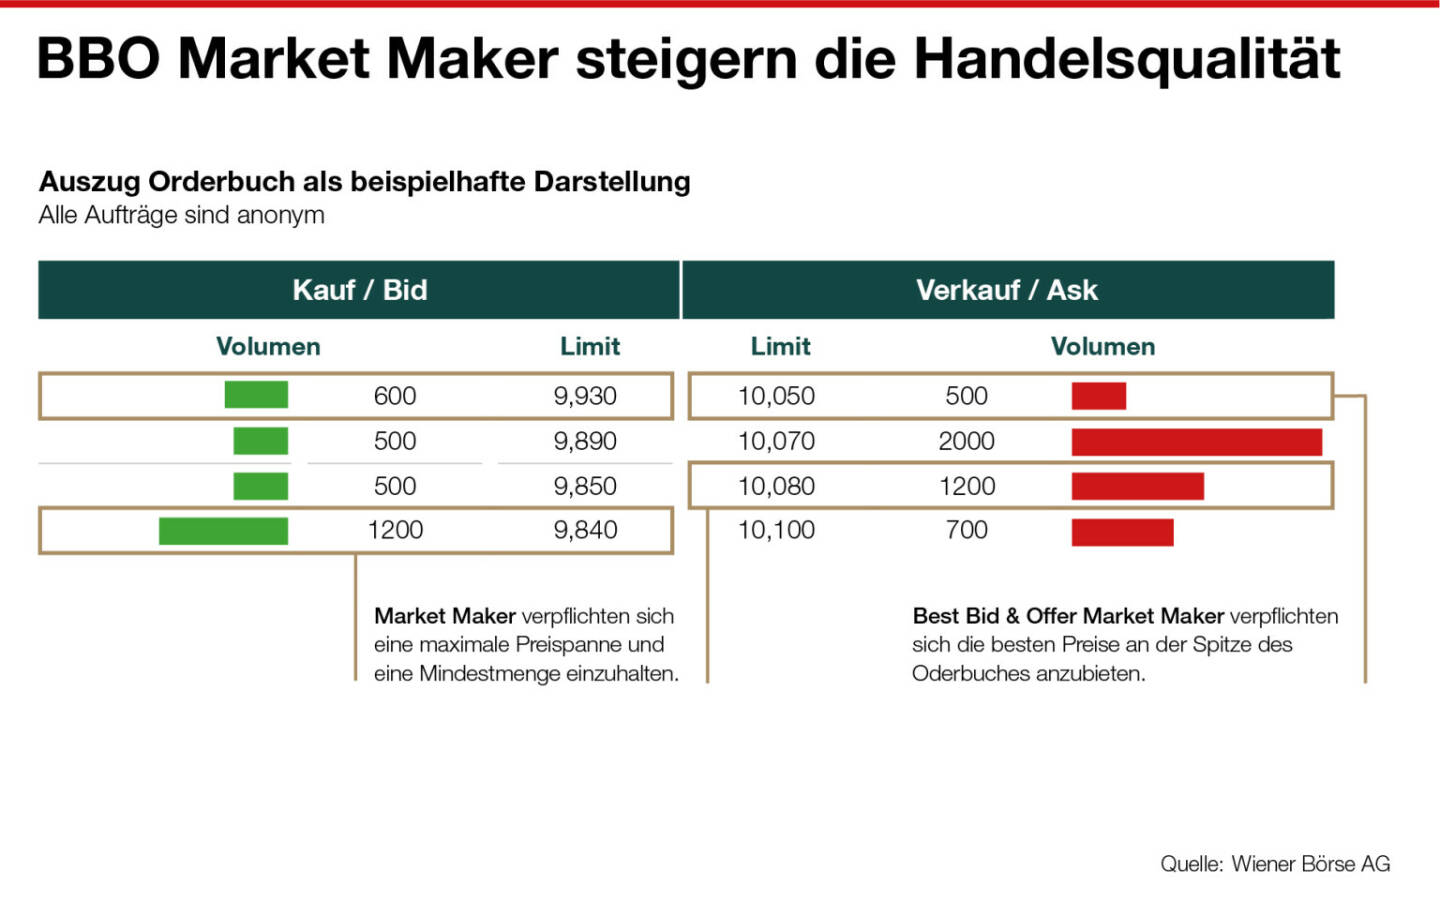 Wiener Börse: Neues Market Making Modell steigert die Handelsqualität und die Attraktivität des Marktplatzes, Credit: Wiener Börse